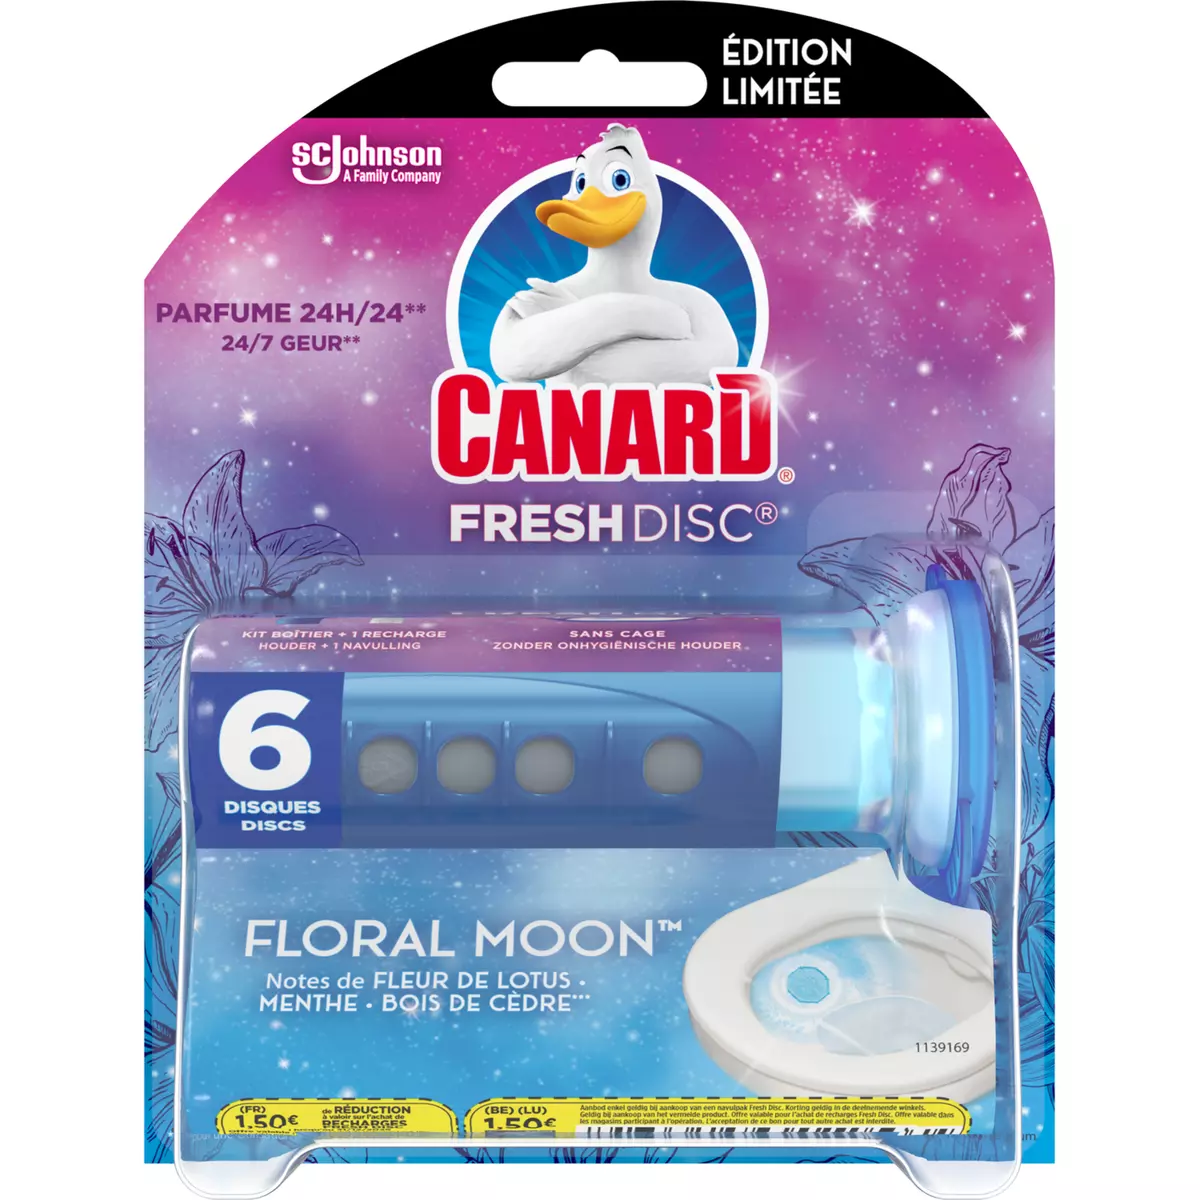 CANARD Fresh Disc disques WC fraîcheur floral moon 6 disques pas cher 